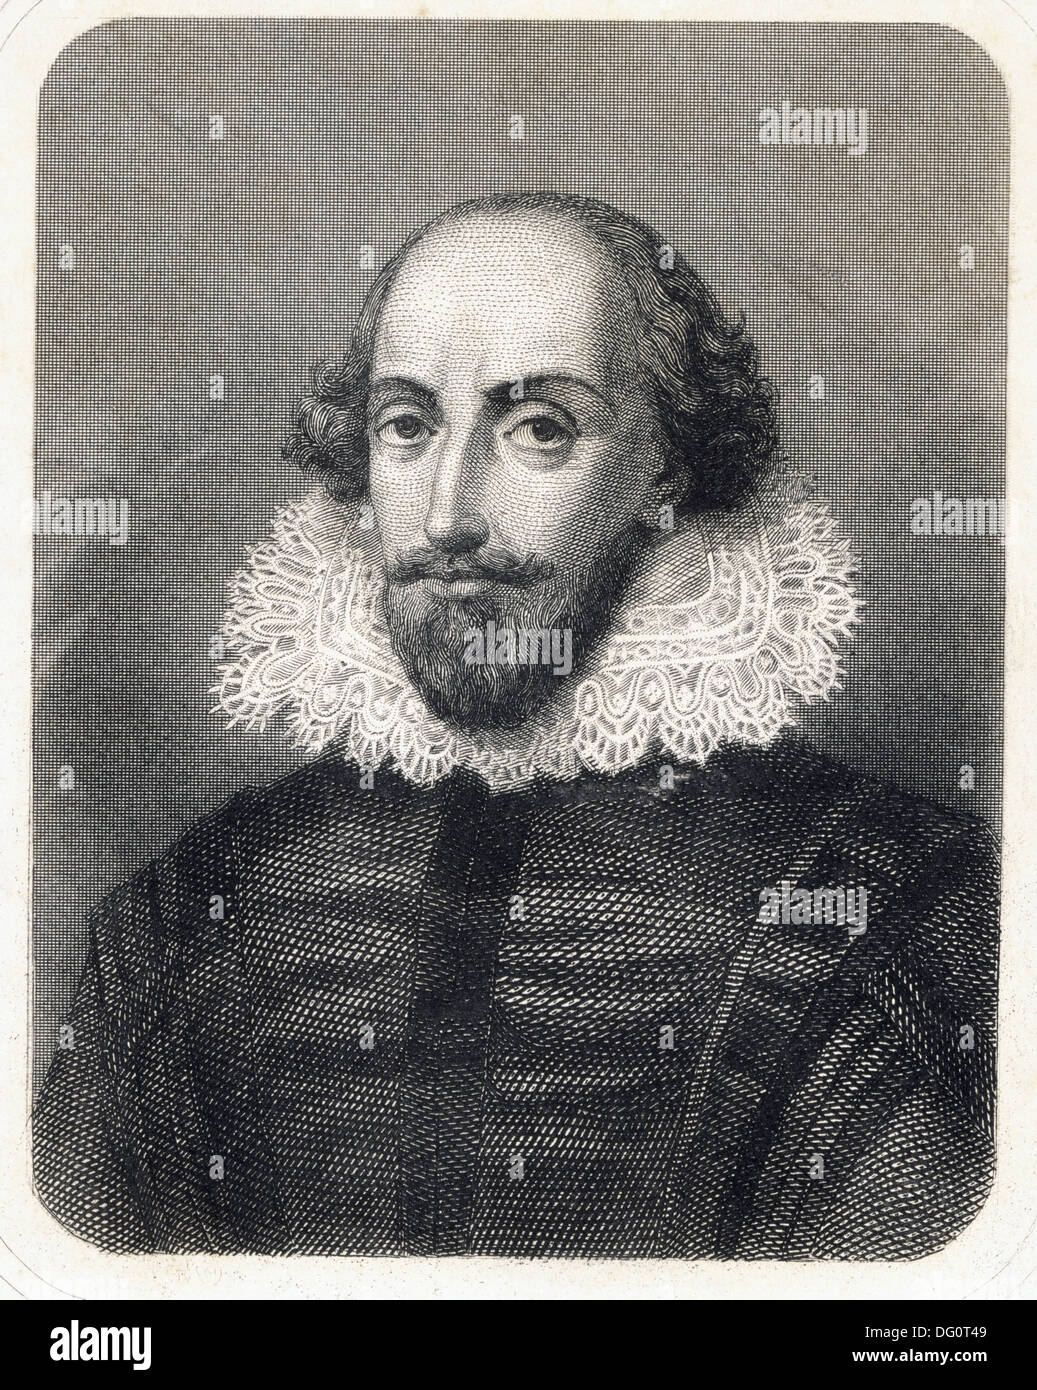 William Shakespeare, poète et dramaturge anglais (1564-1616) Banque D'Images